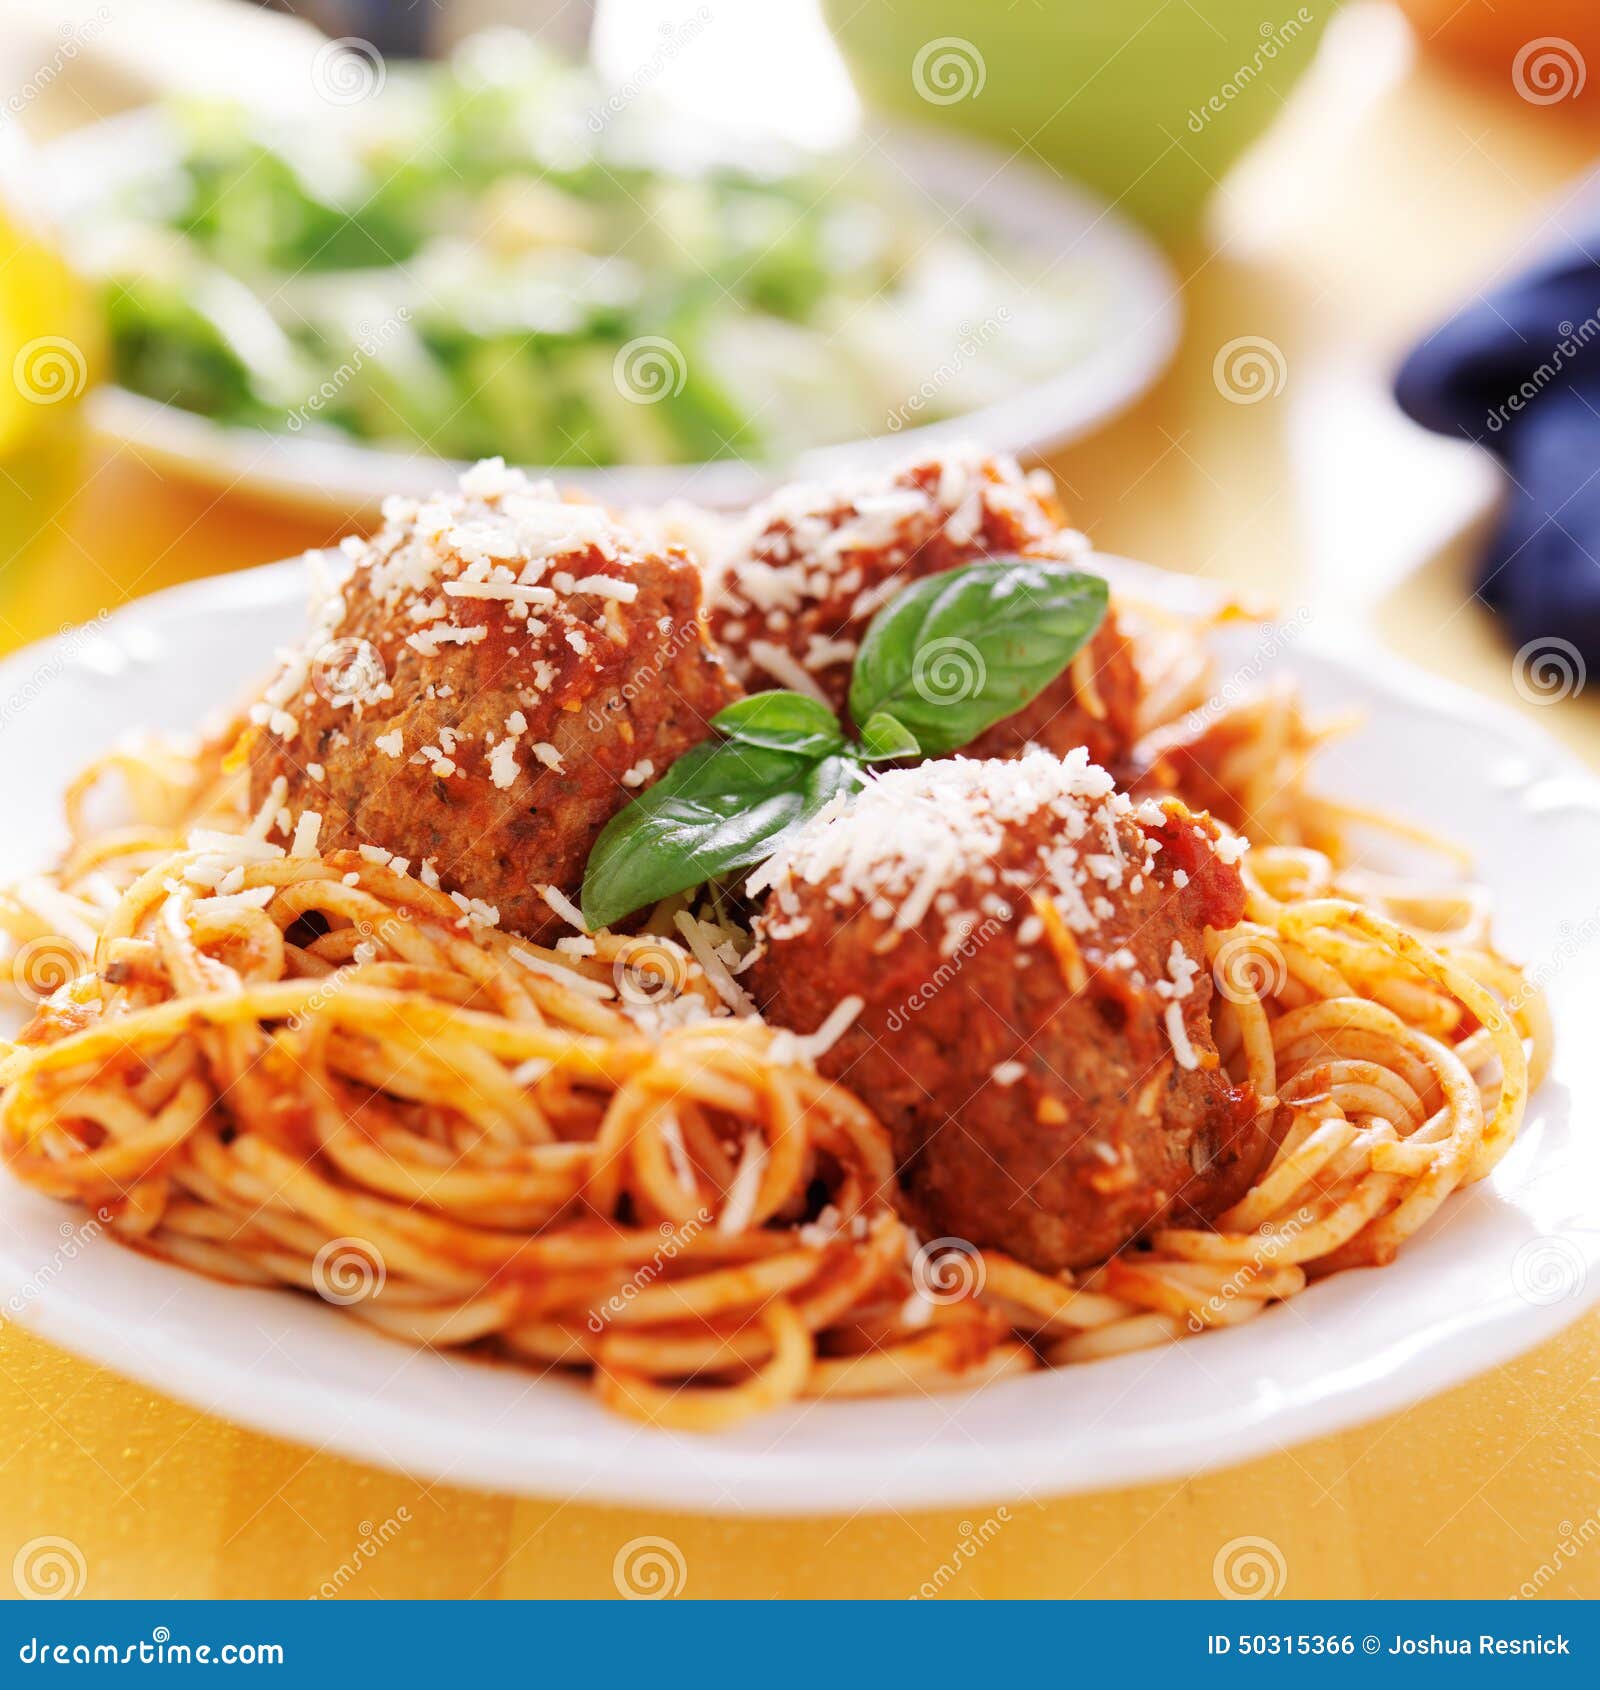 plate of italian spaghetti and meatballs